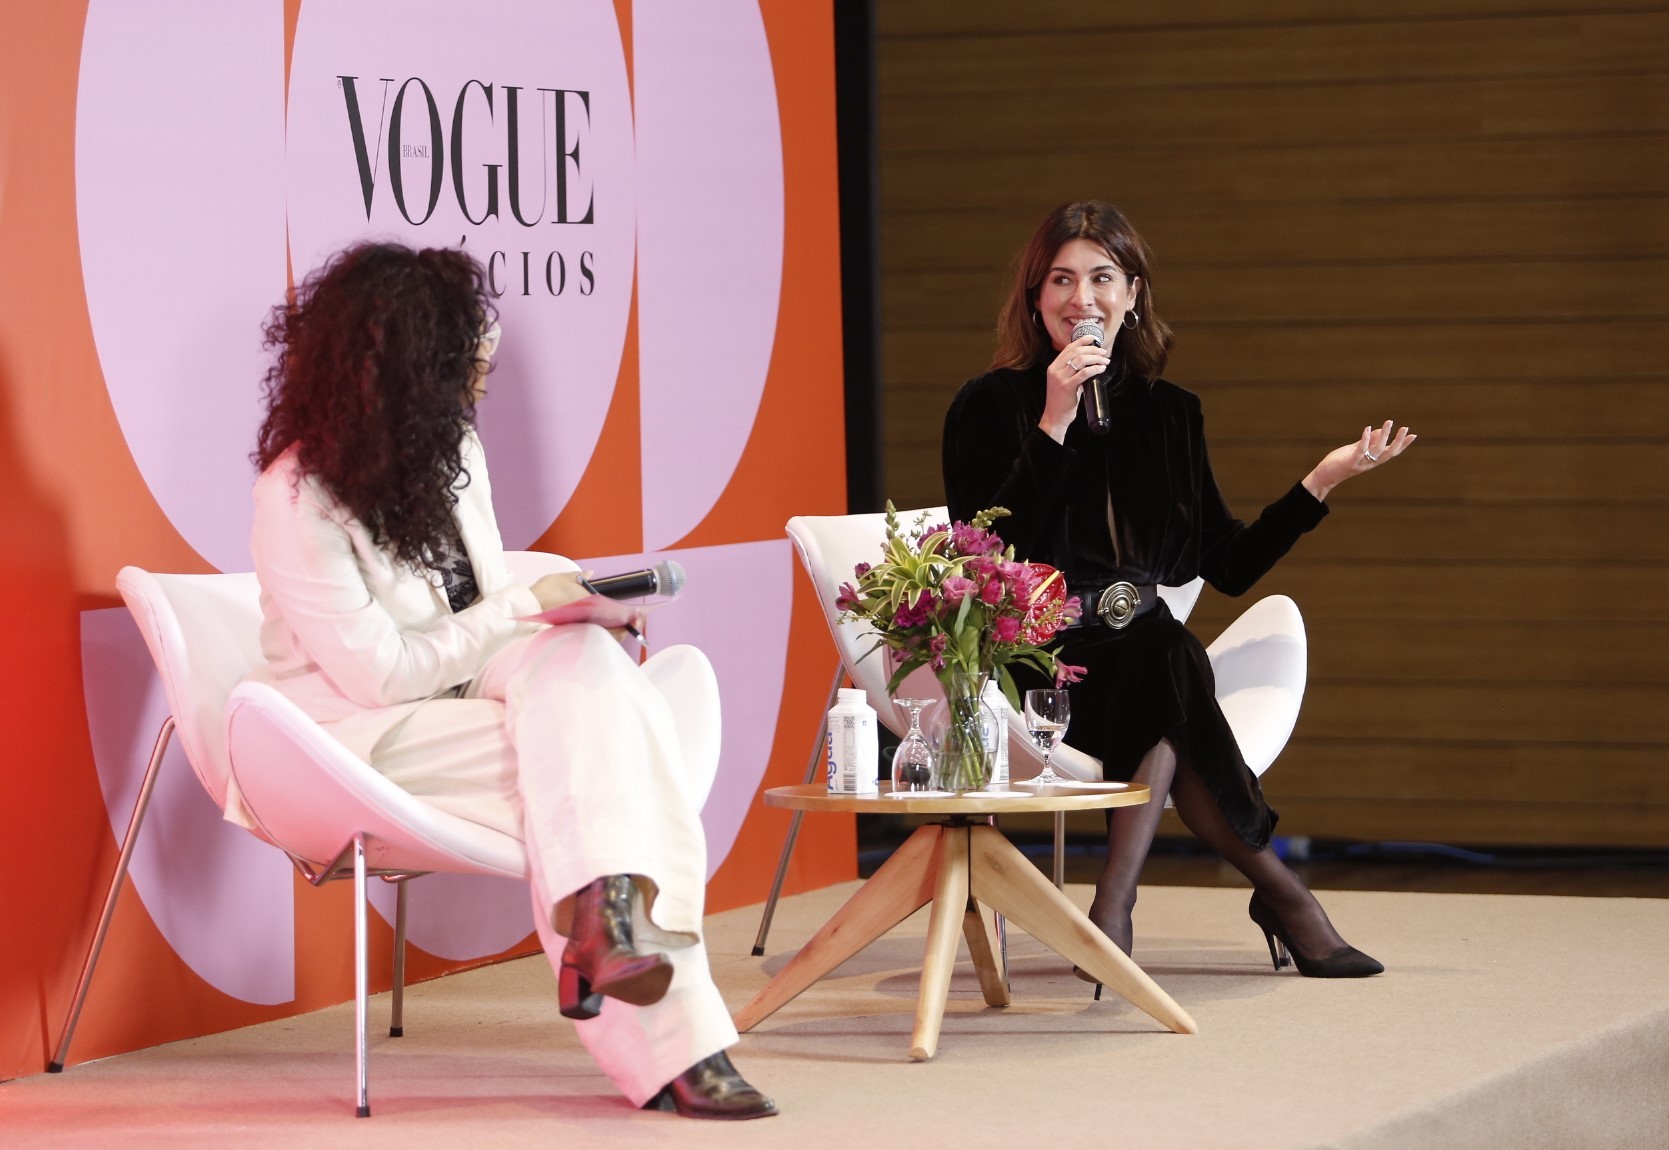 Vogue Negócios - O podcast como ferramenta de desenvolvimento de marca (Foto: Vogue/ @kenjinakamura)